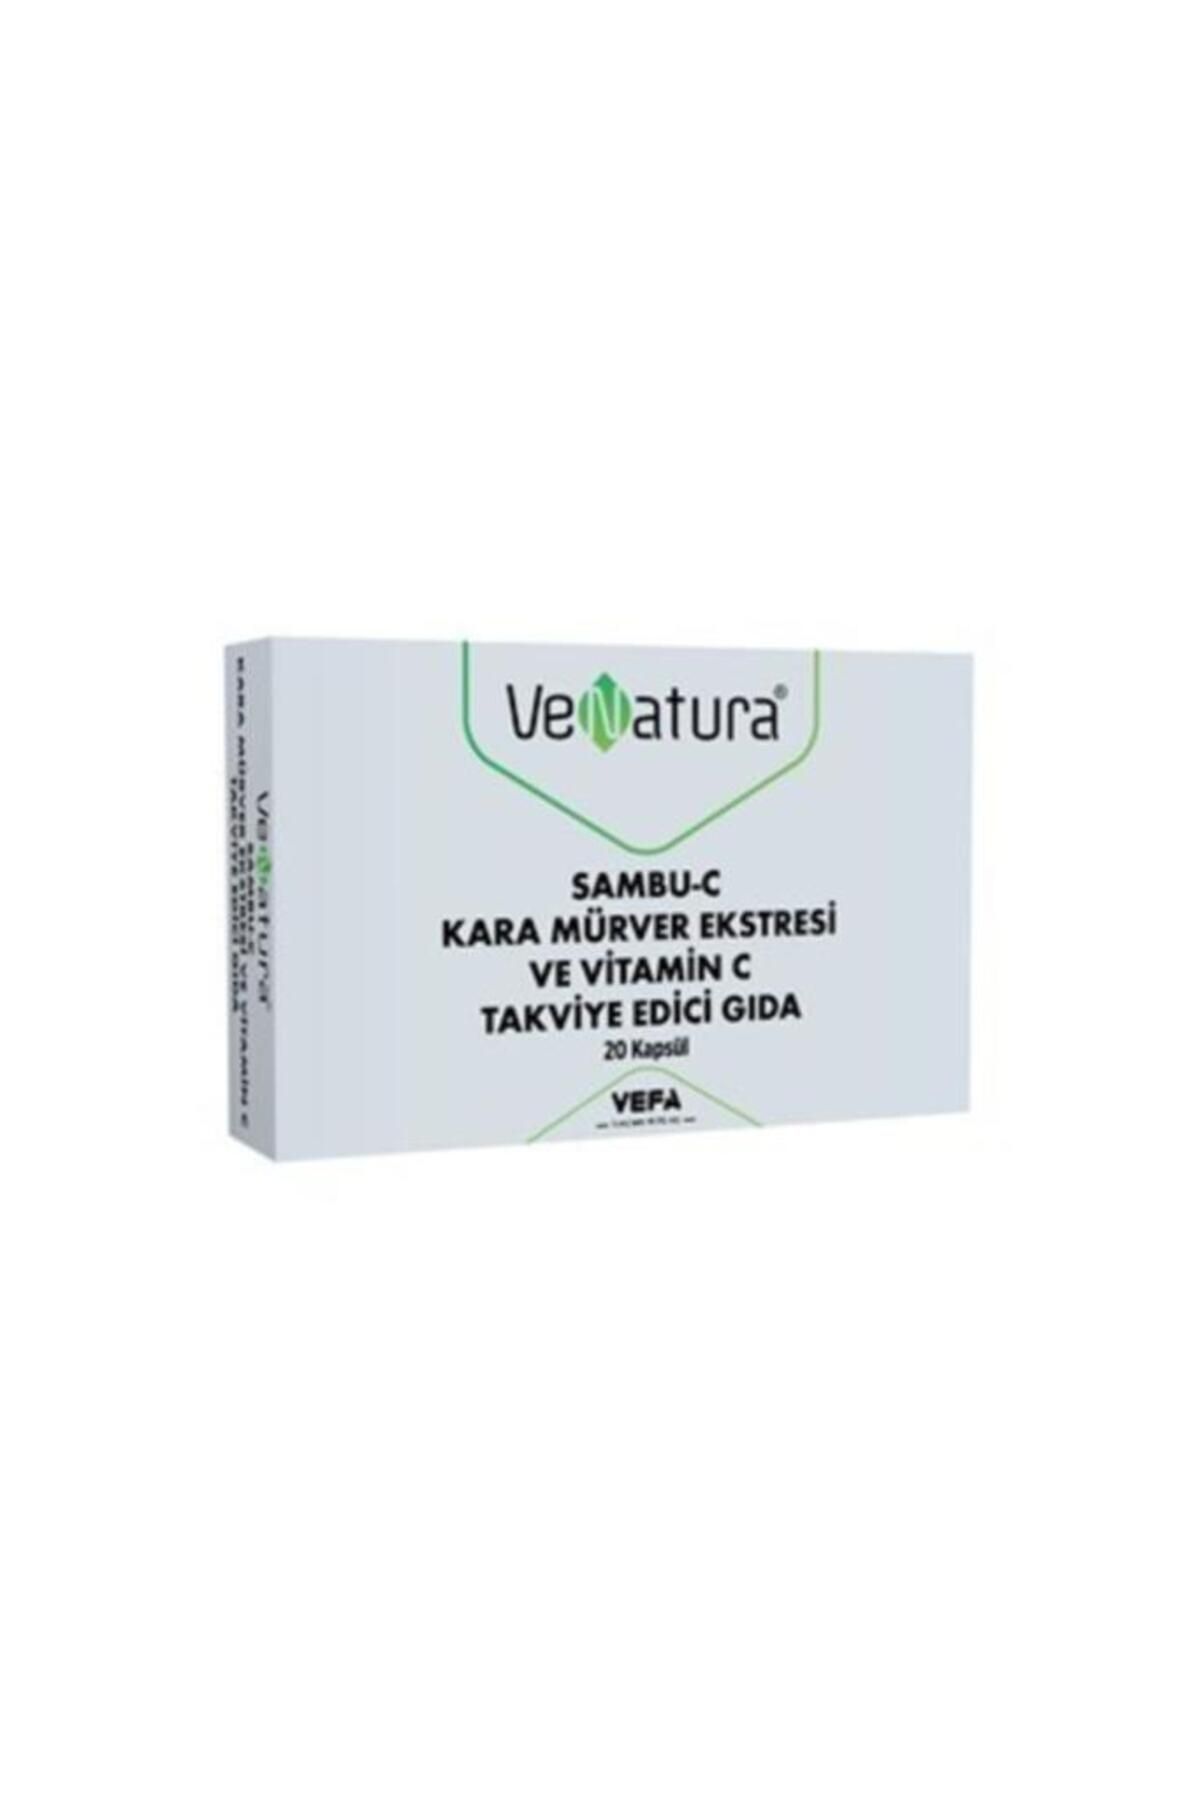 Venatura Sambu-c Kara Mürver Ekstresi Ve Vitamin C Takviye Edici Gıda 20 Kapsül